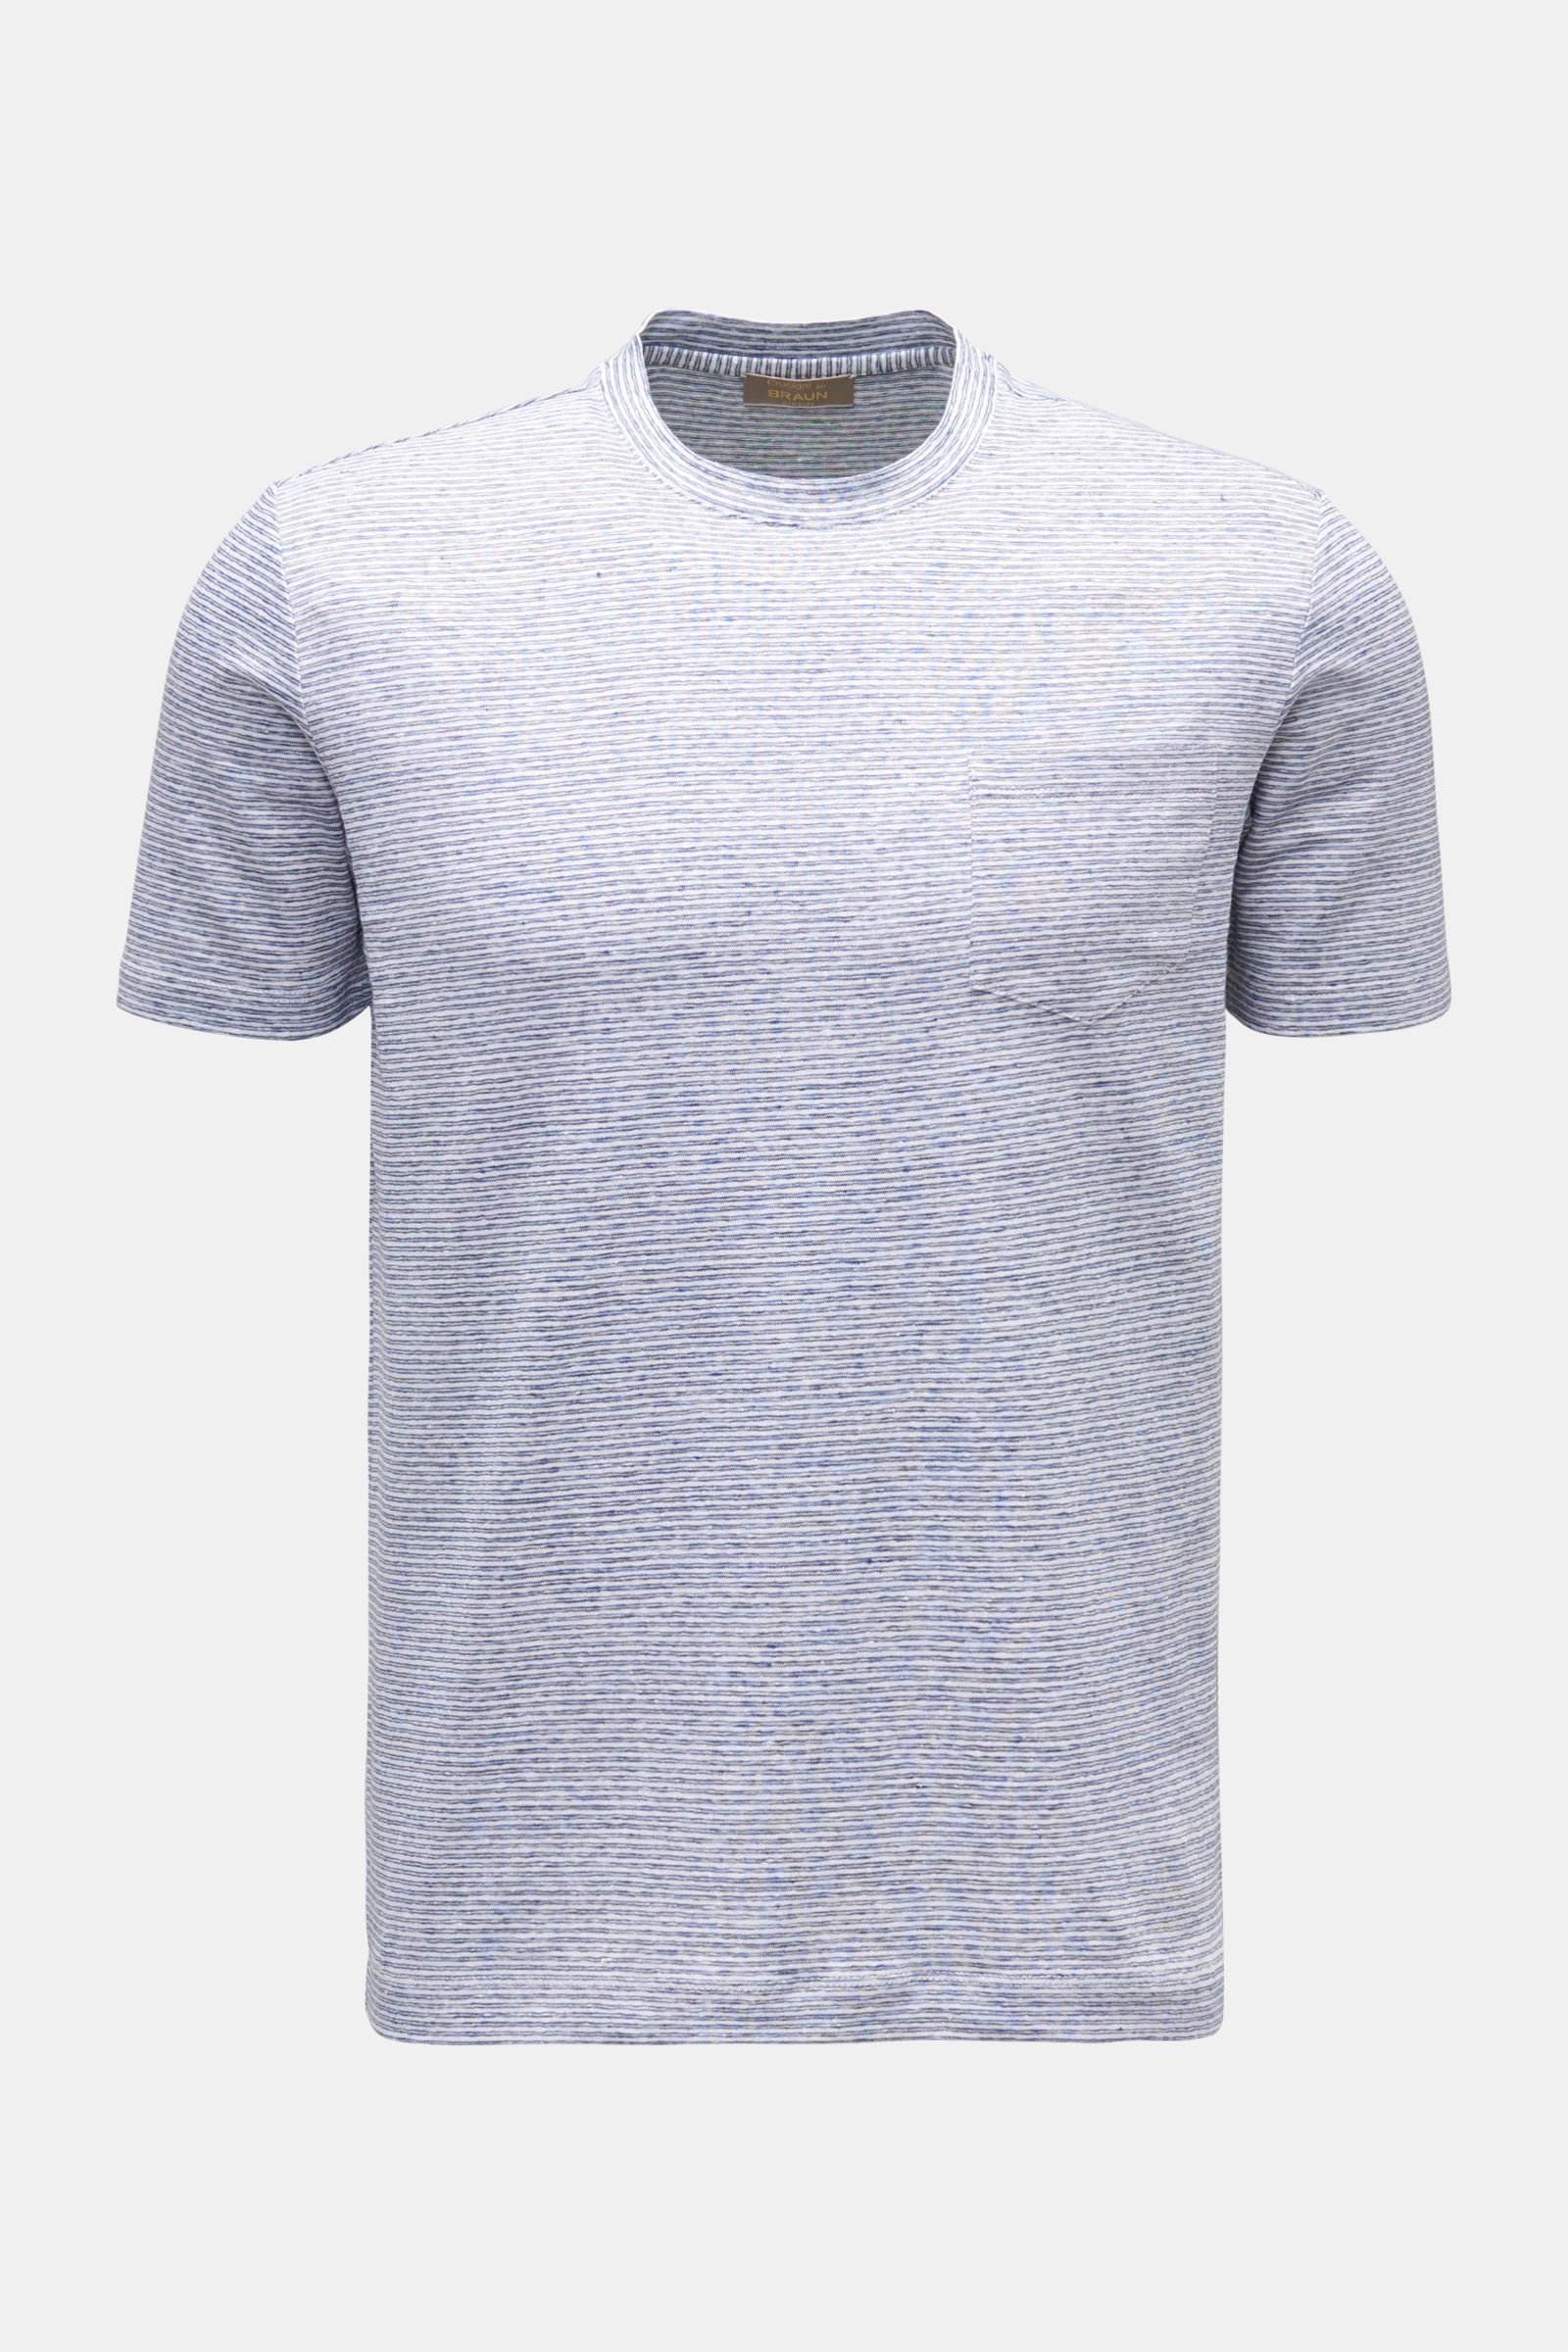 Leinen Rundhals-T-Shirt navy/weiß gestreift